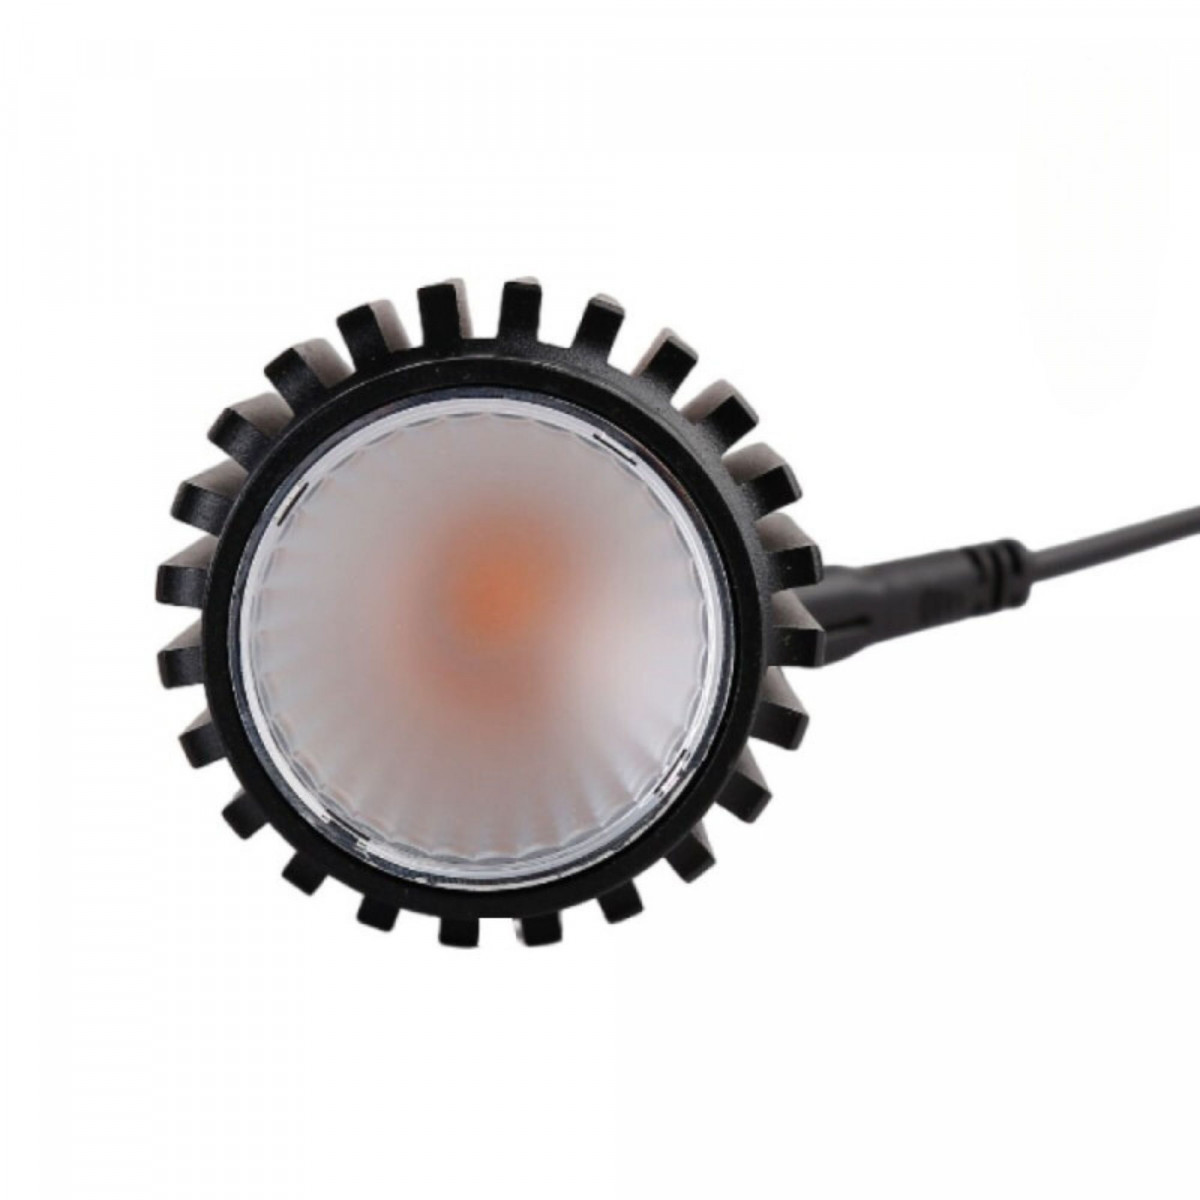 15W LED Modul für MR16/GU10 Downlight Einbauring - TRIAC dimmbar 45° CRI90 - LED Einbauleuchte, Deckenspot, Einbaulampe